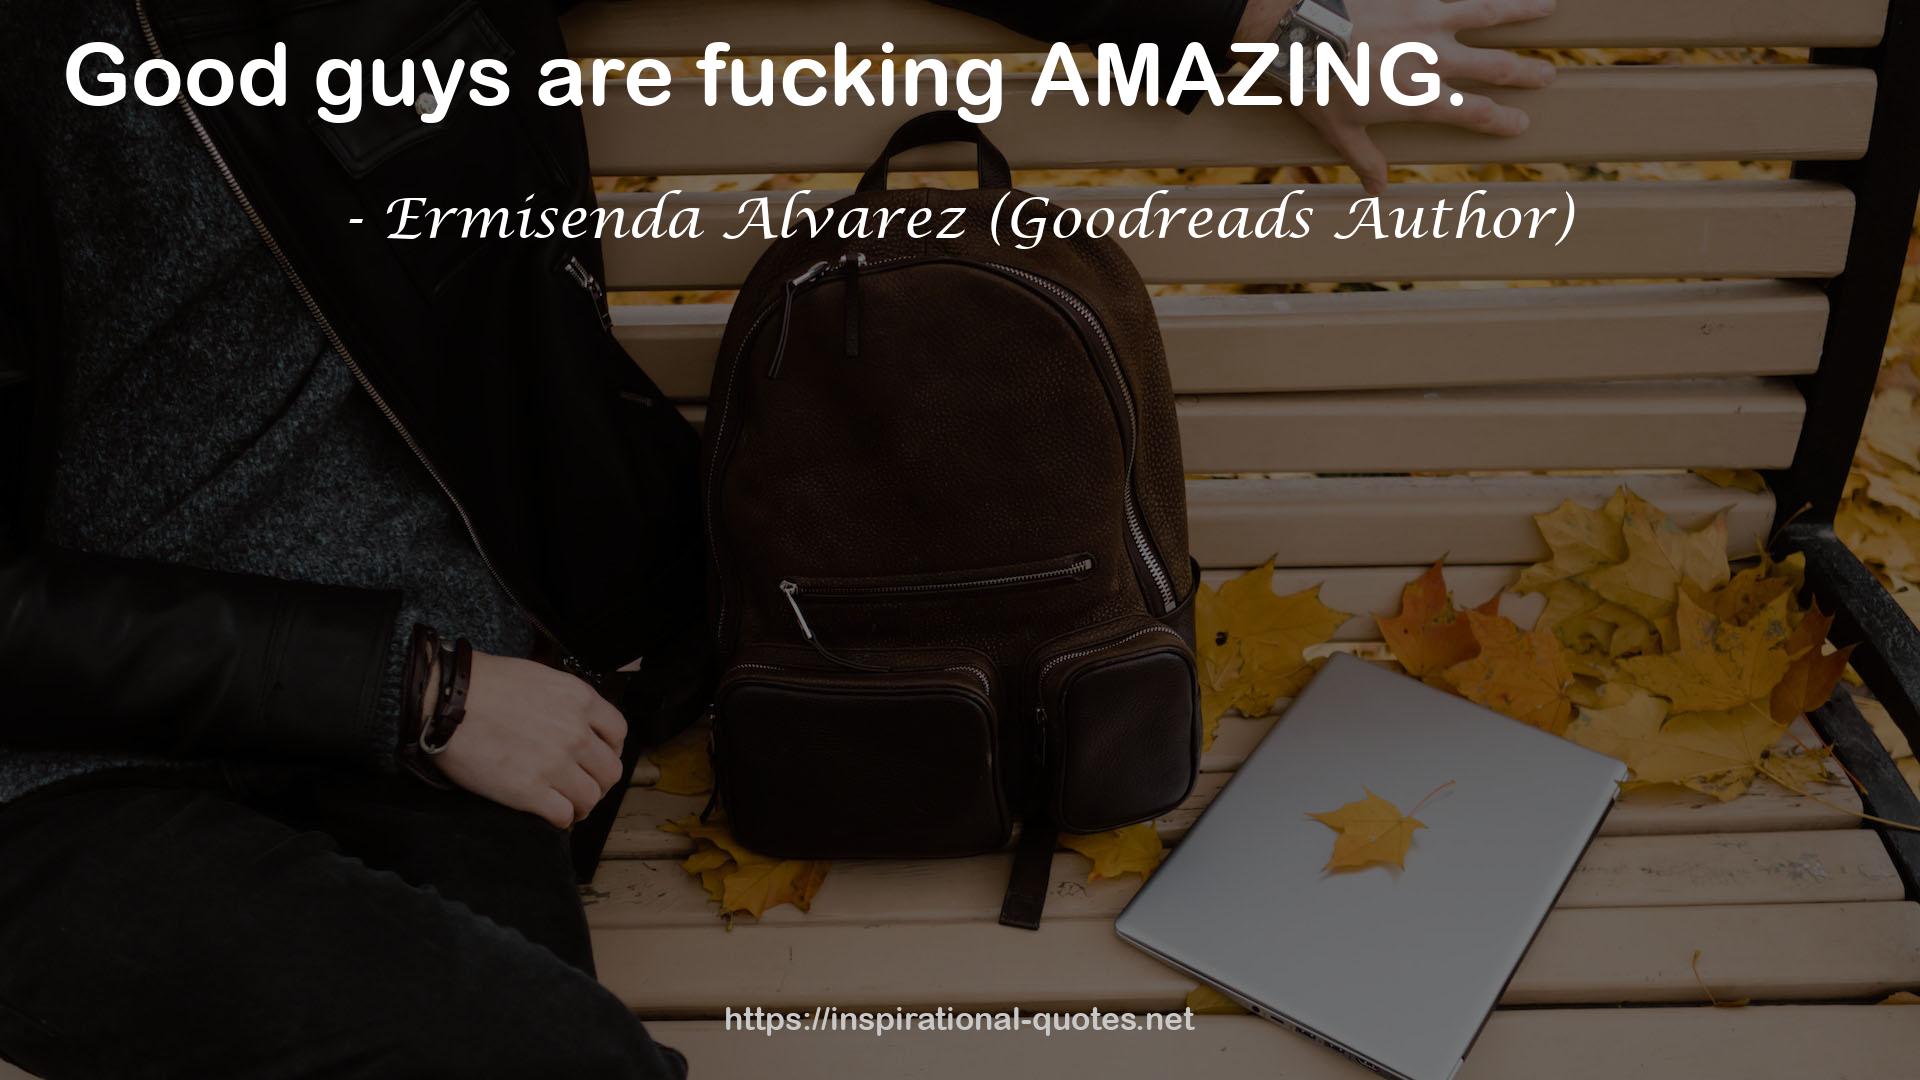 Ermisenda Alvarez (Goodreads Author) QUOTES